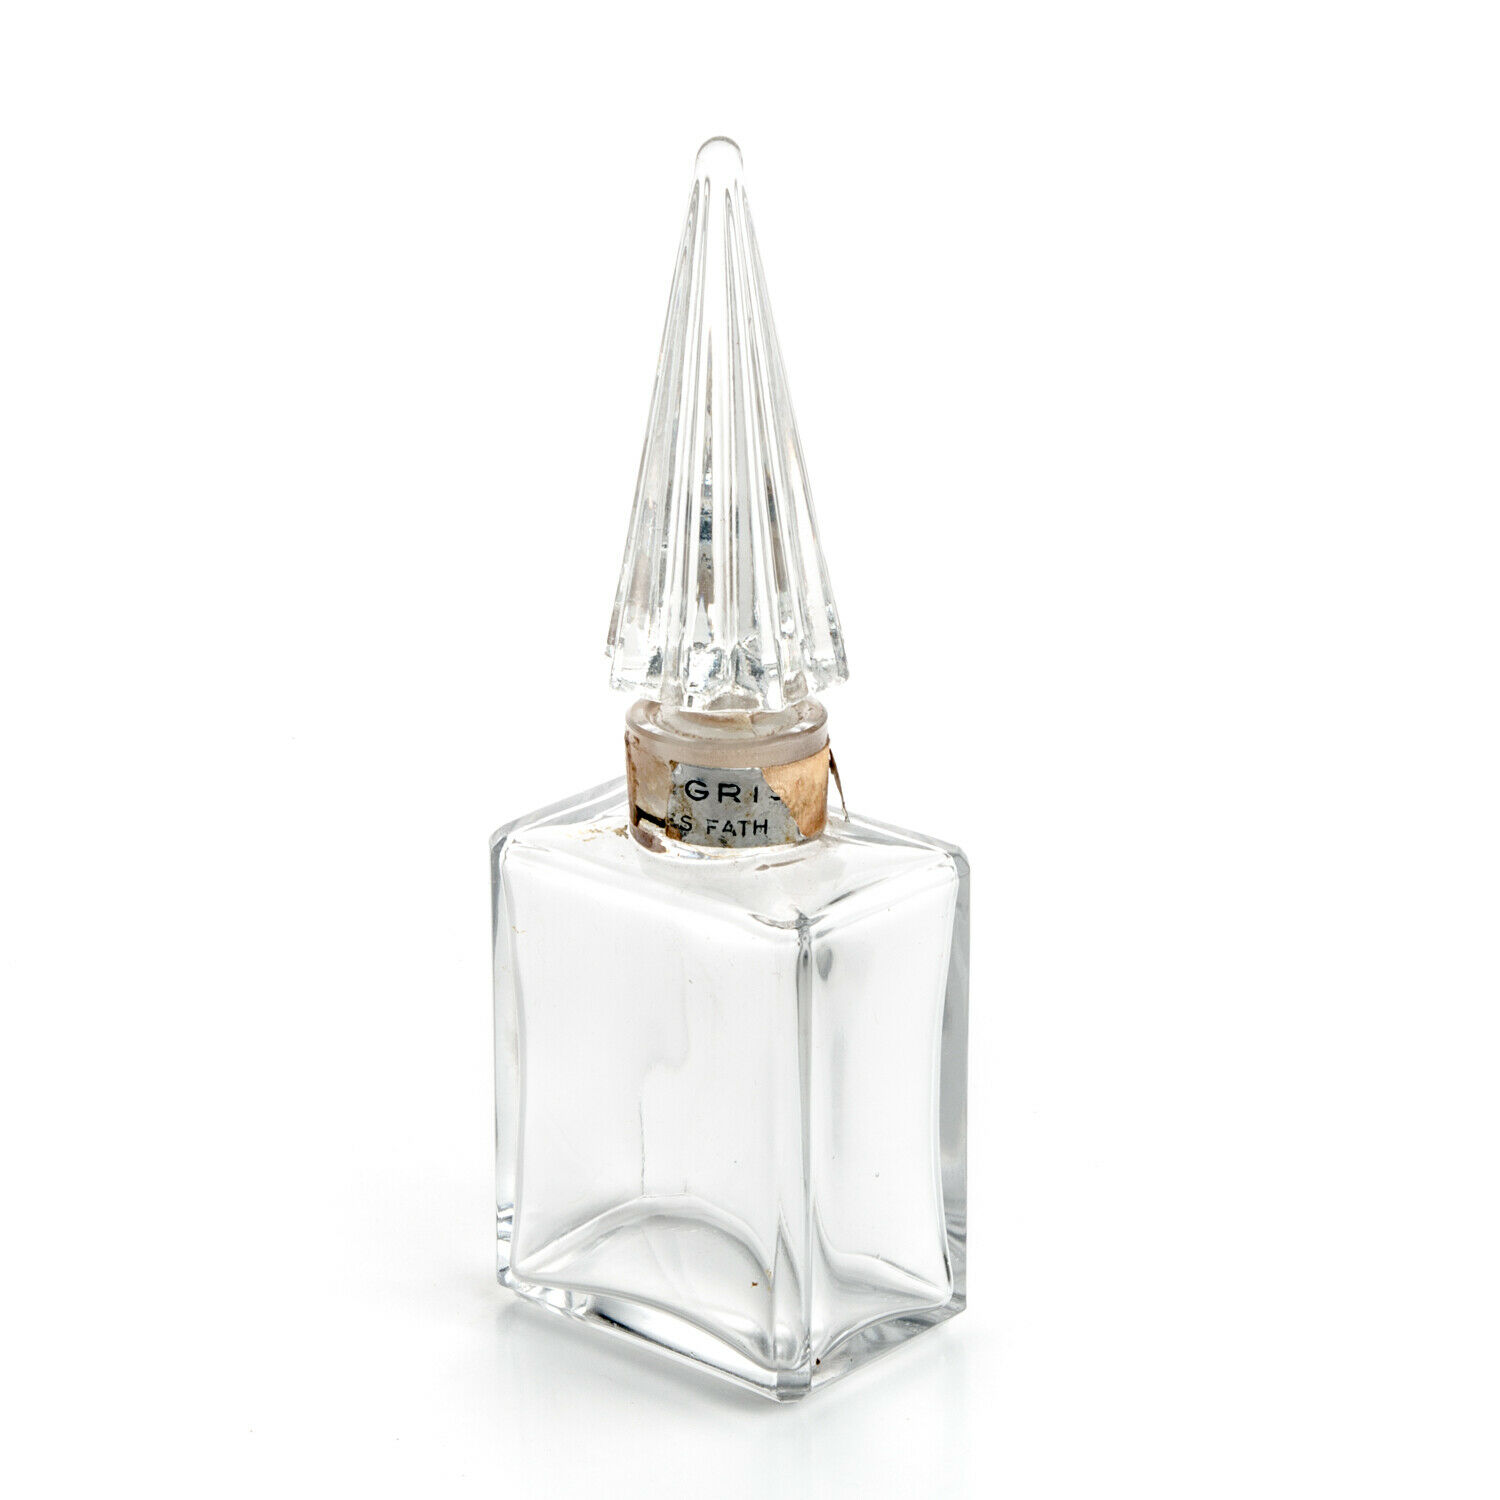 5.5" Jacques Fath Iris Gris Perfume Bottle Parfum Flacon Vintage Original Glass